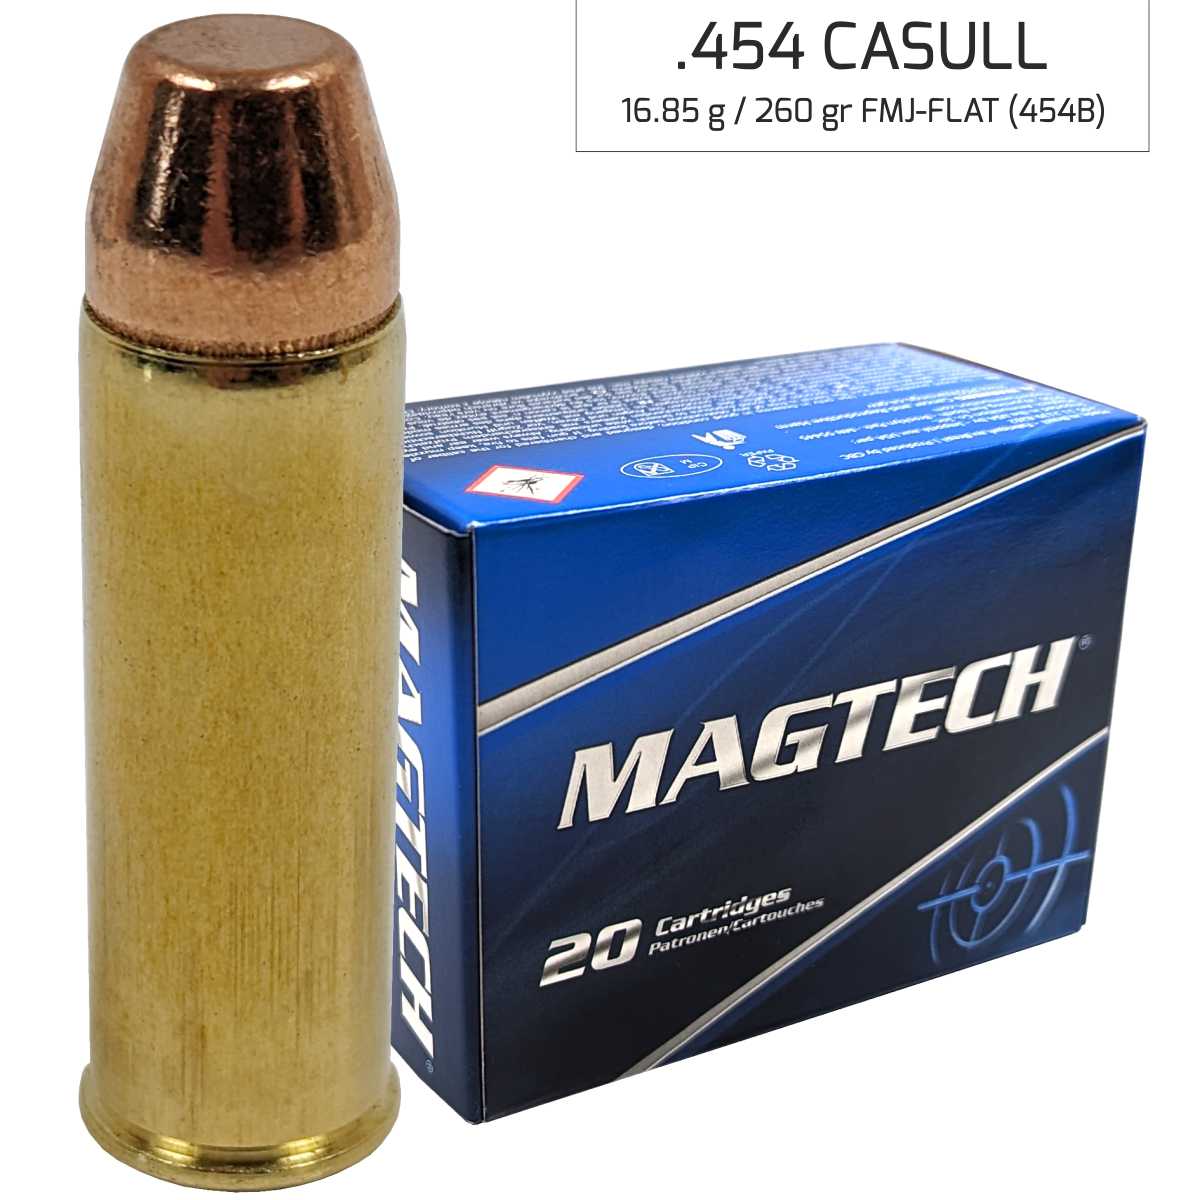 Náboj Magtech 454 Casull SJSP FLAT (454A) 16,85 g, 260 grs